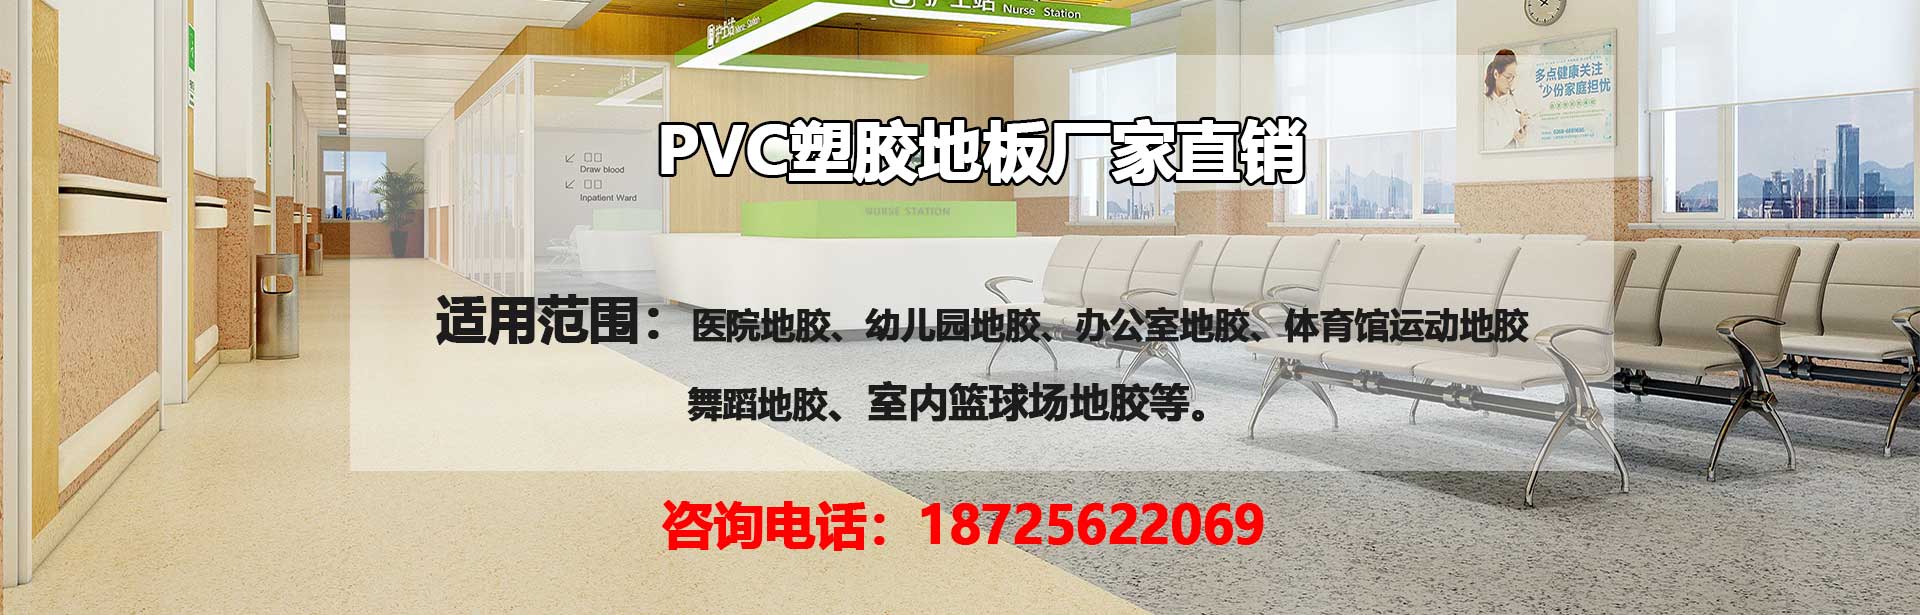 武汉PVC塑胶地板